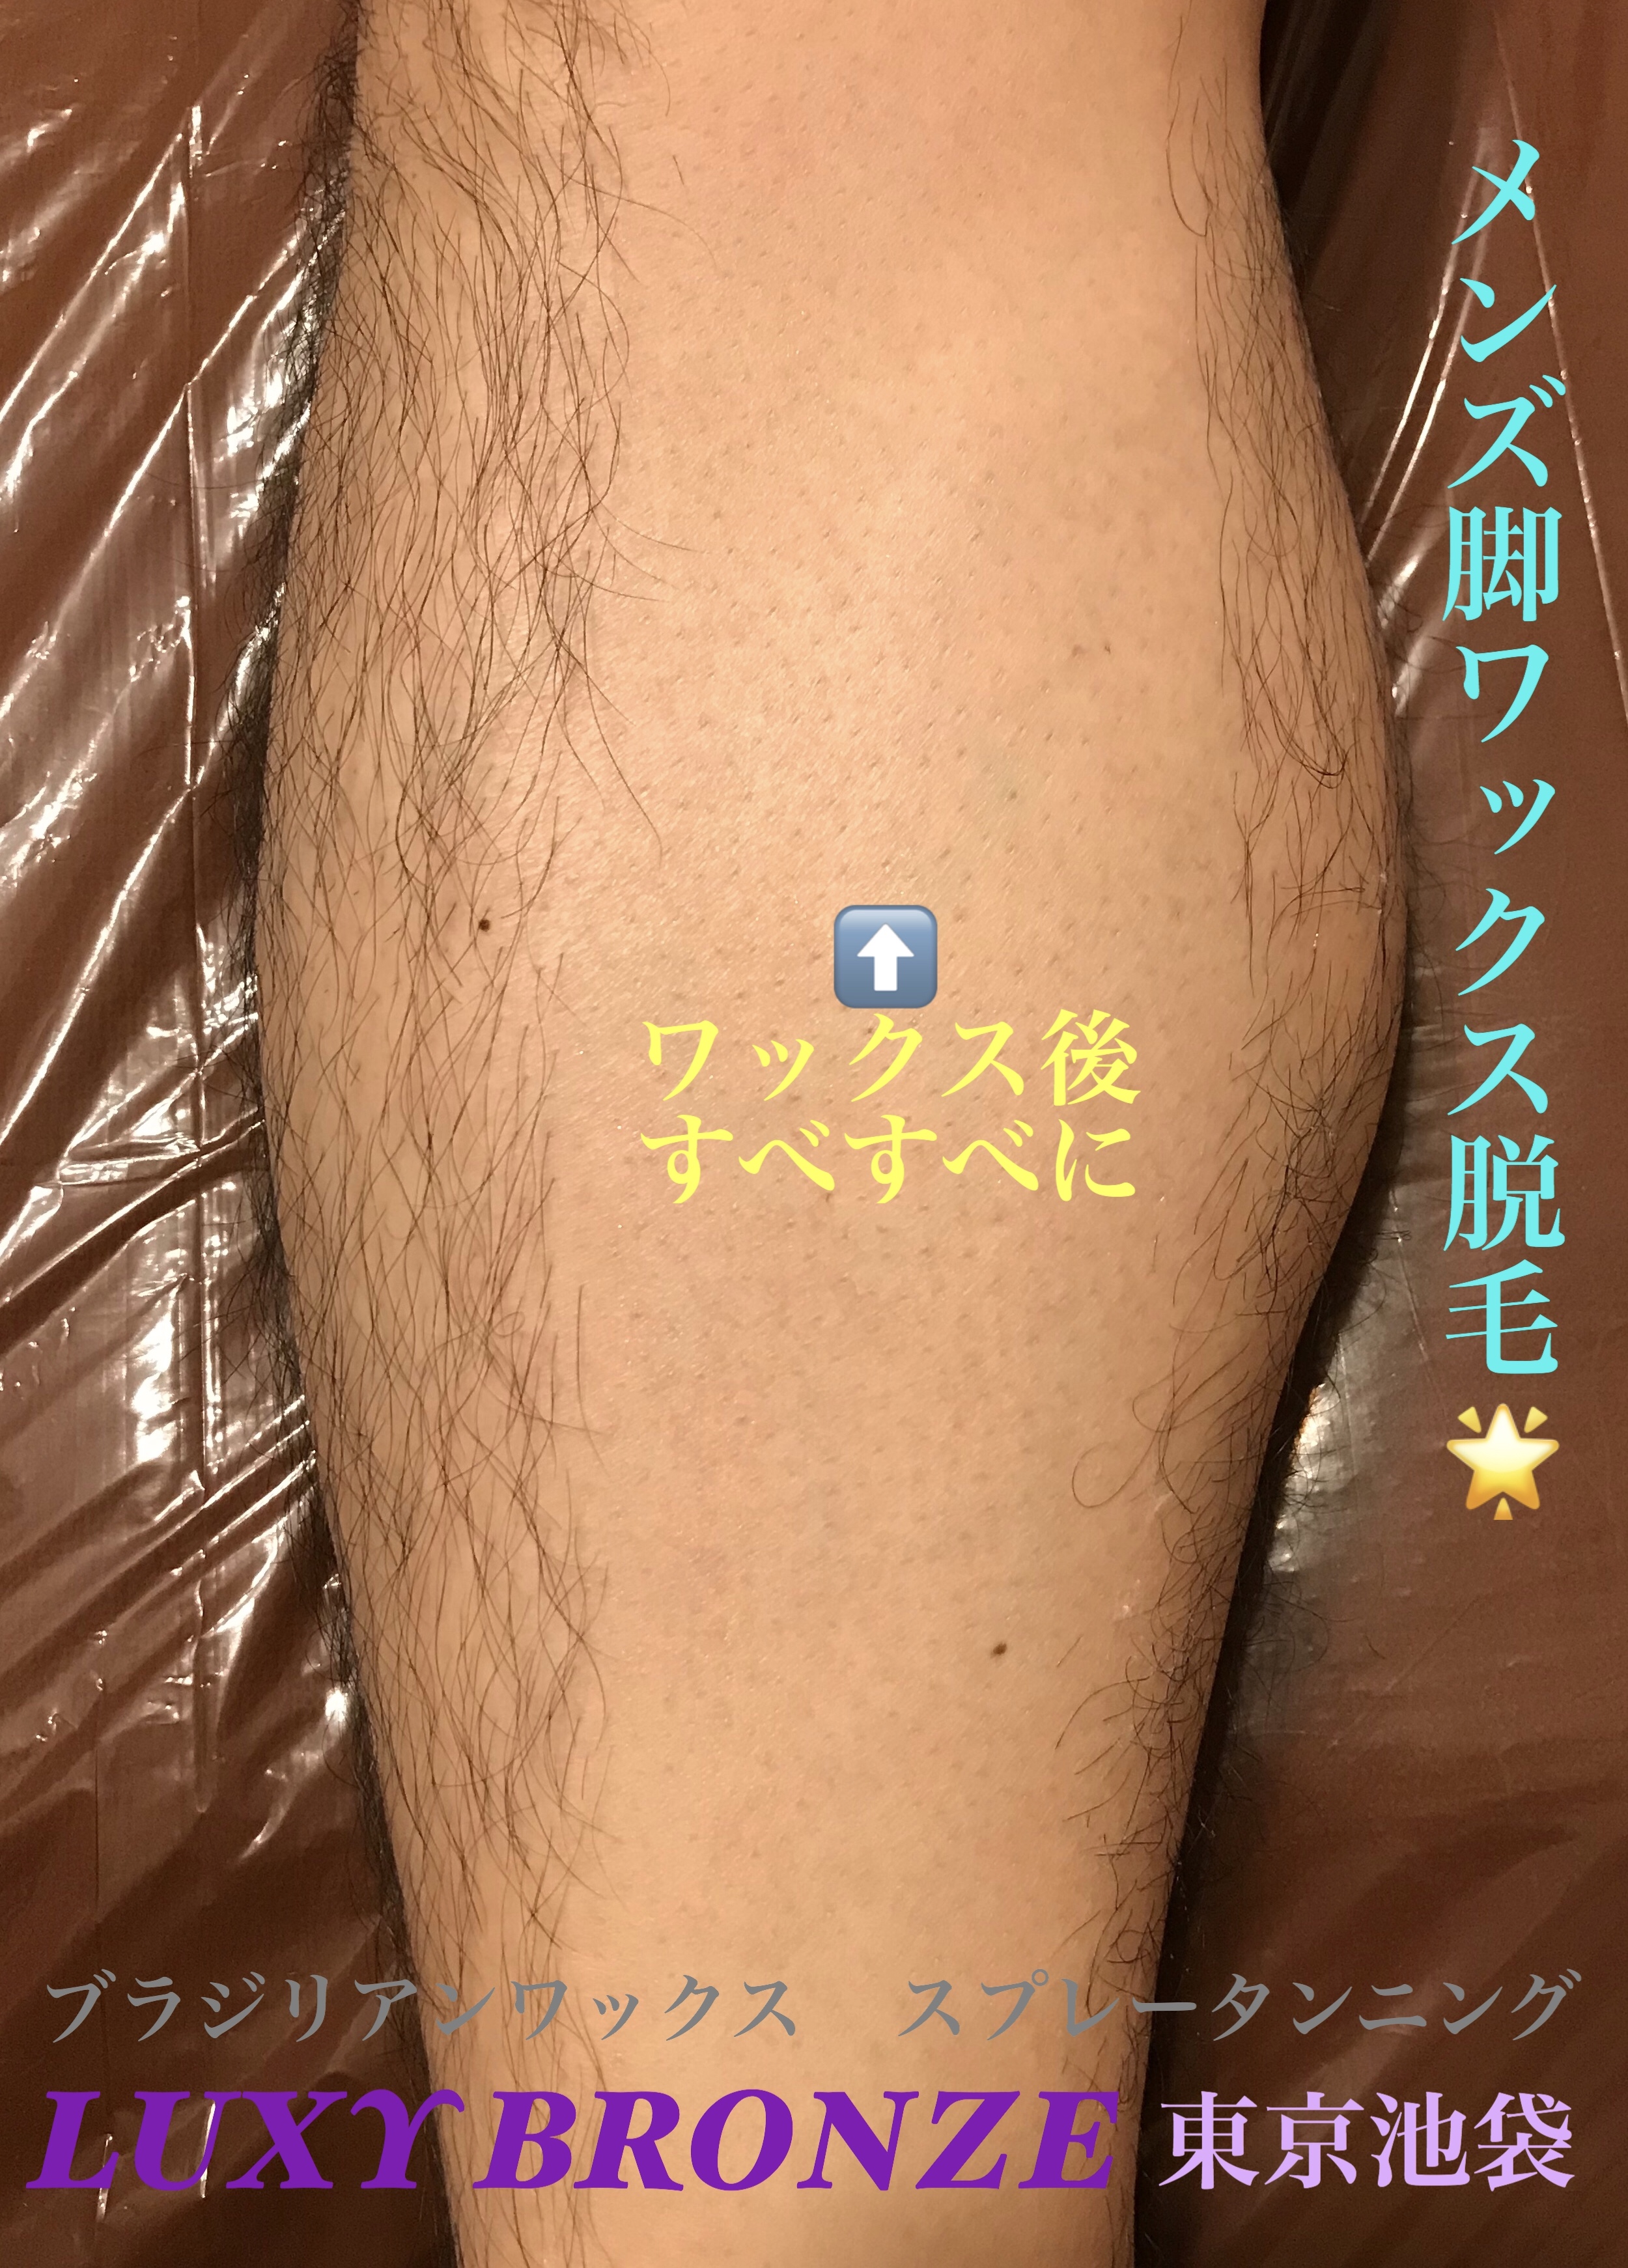 ○足・脚のムダ毛処理にはメンズワックス脱毛がオススメ【東京